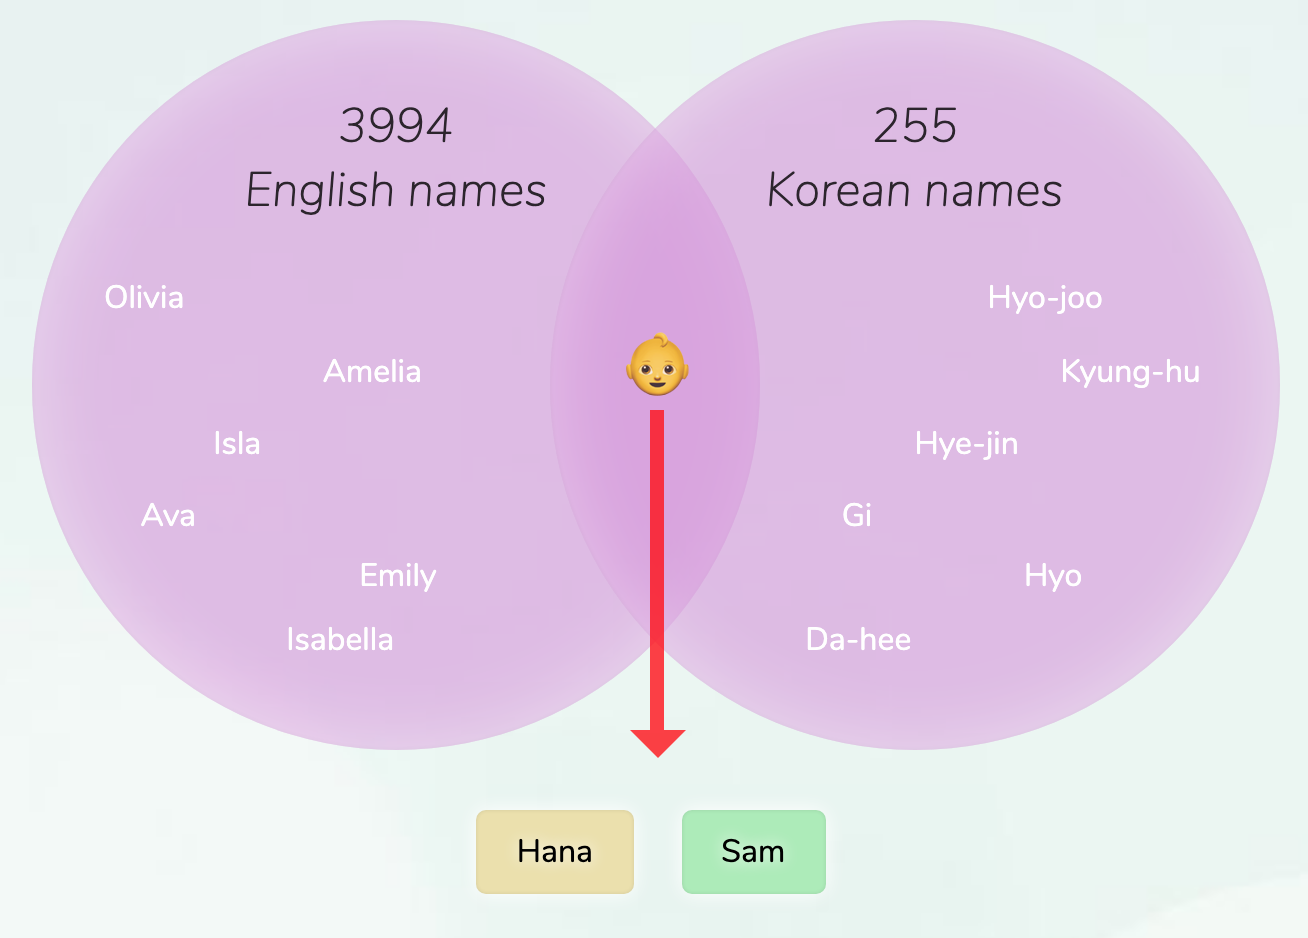 Korean name for girl